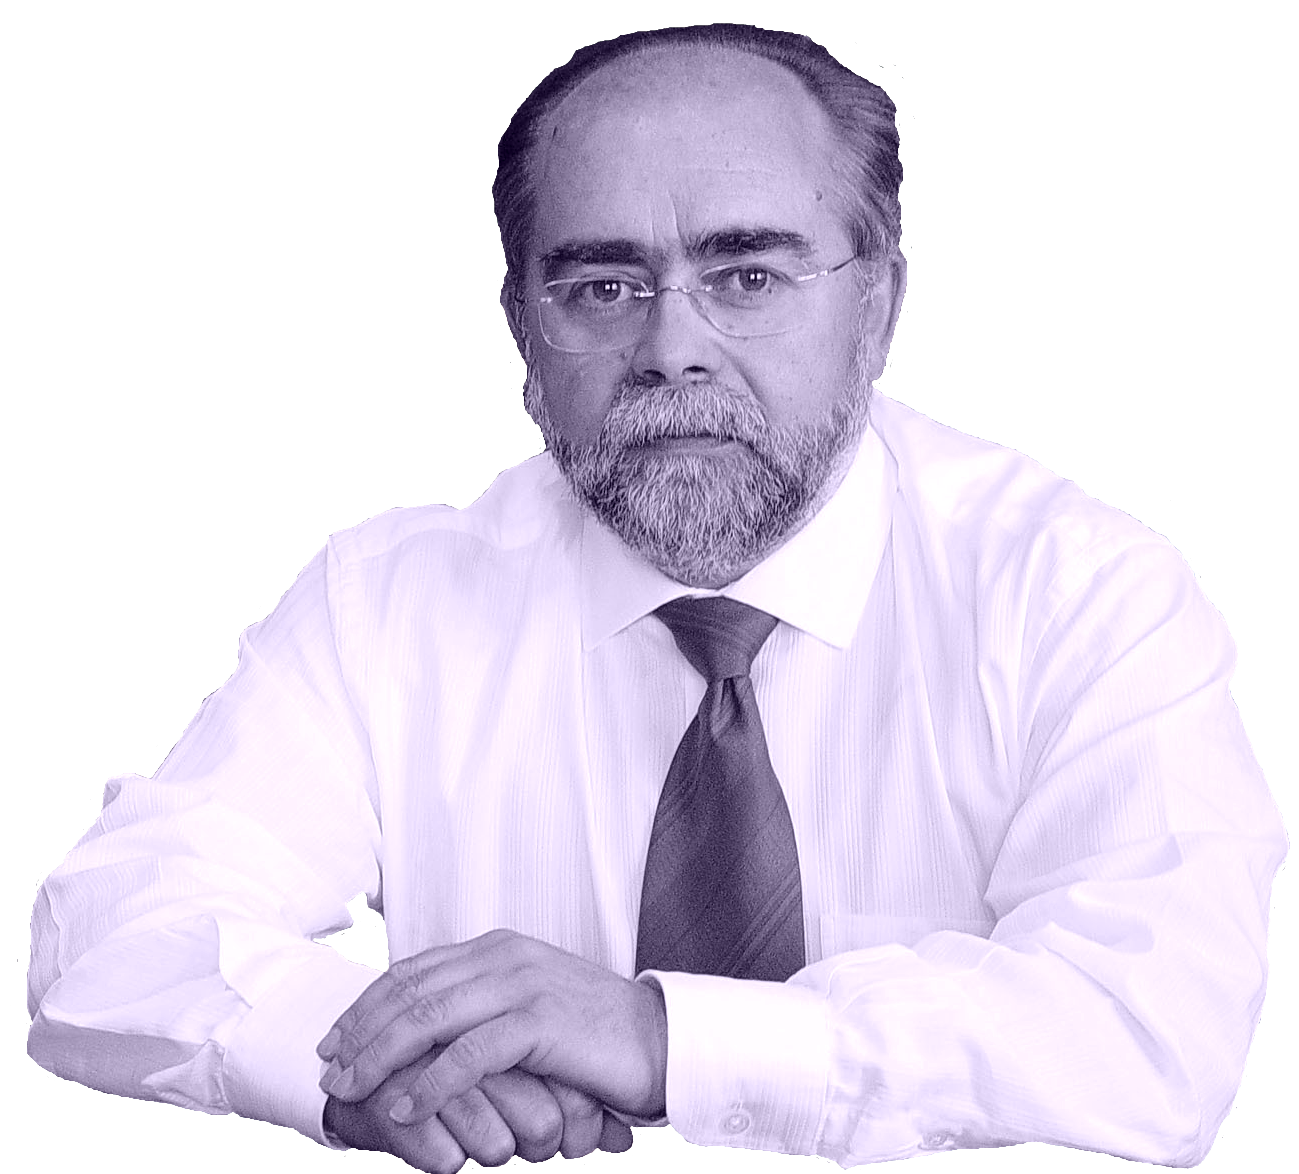 Sr. José Luís  Fernández